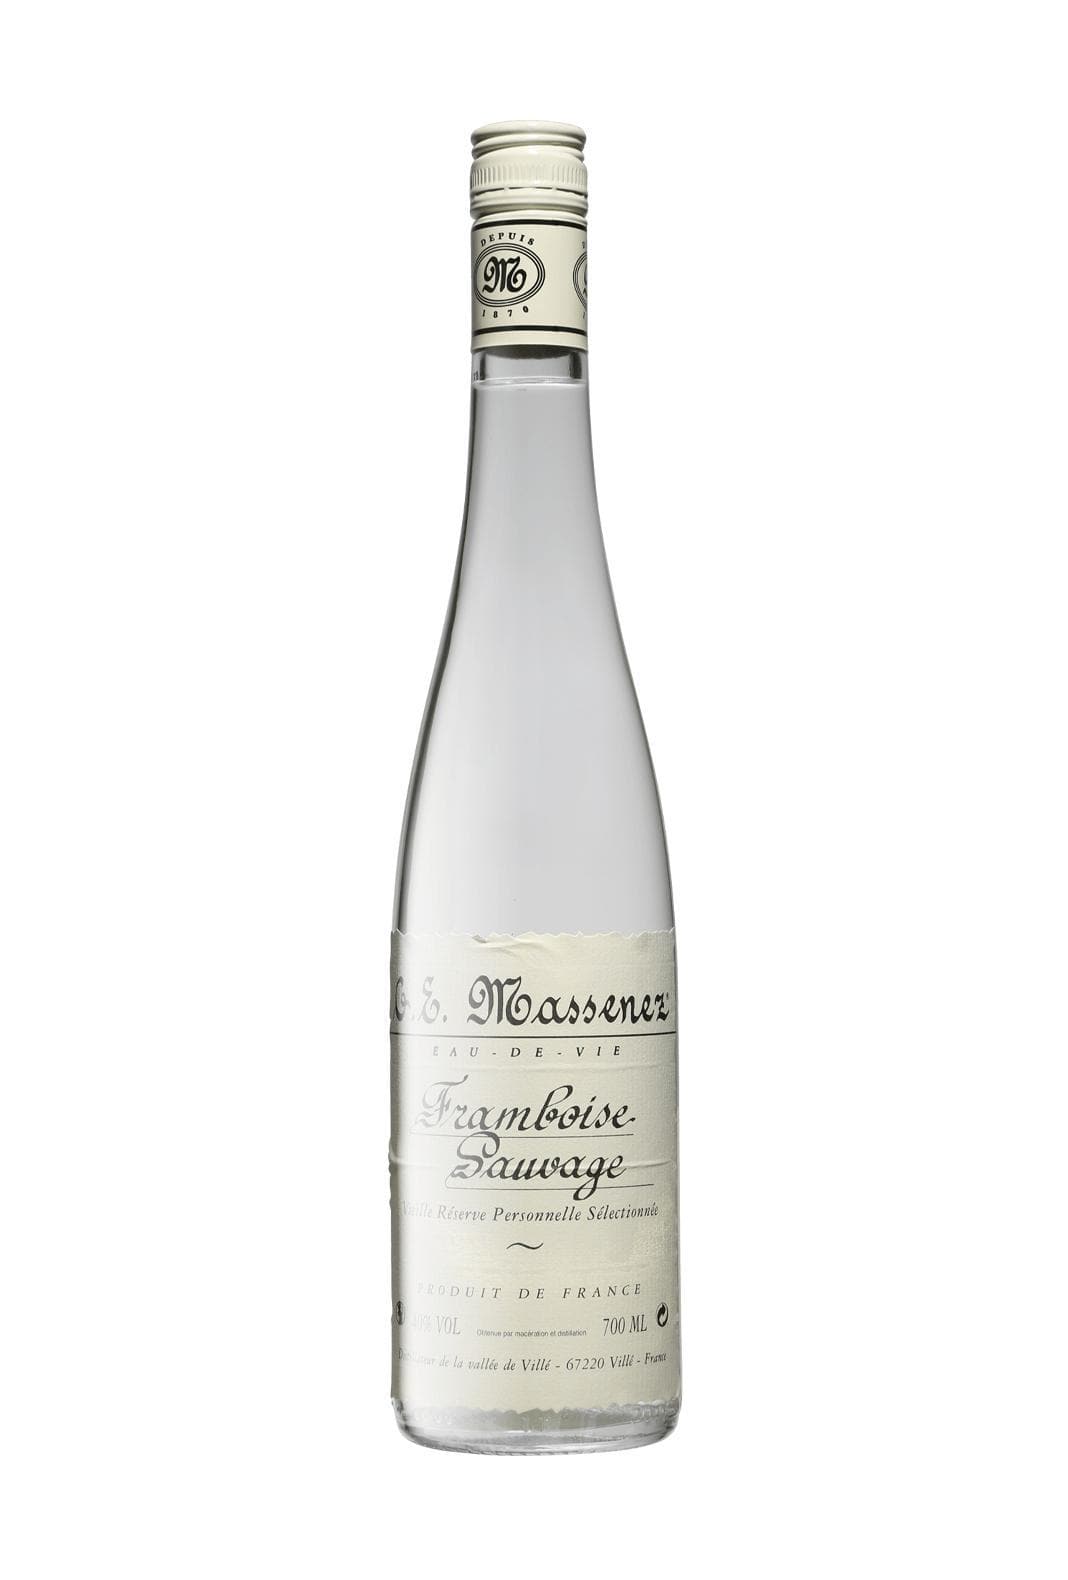 Massenez Eau de Vie Framboise 'Sauvage' 40% 700ml | Liqueurs | Shop online at Spirits of France